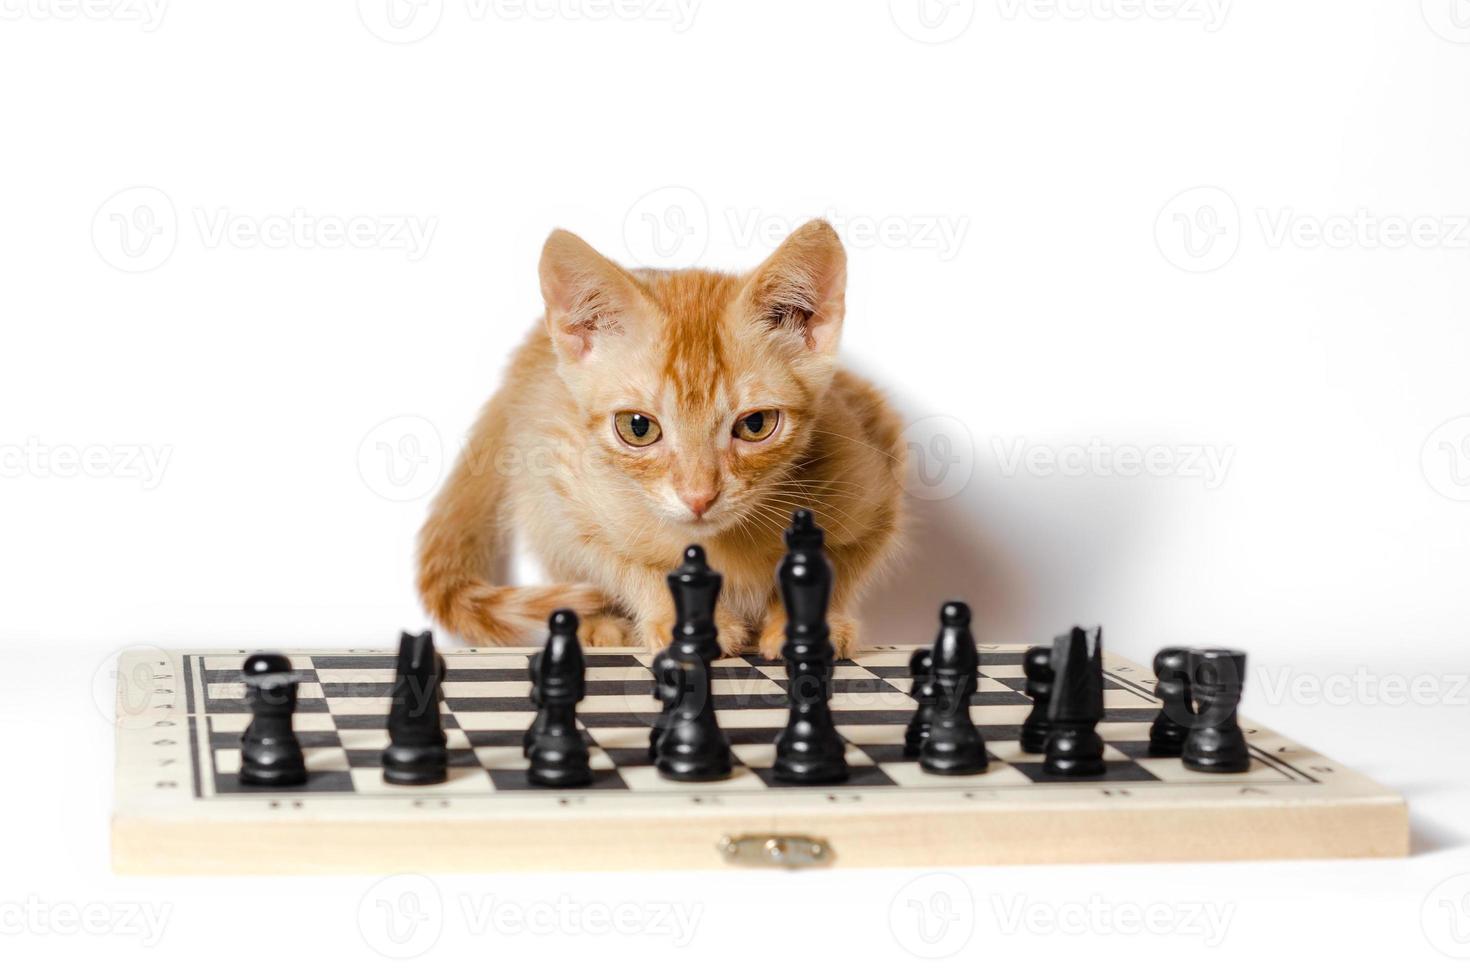 gato laranja com um tabuleiro de xadrez foto